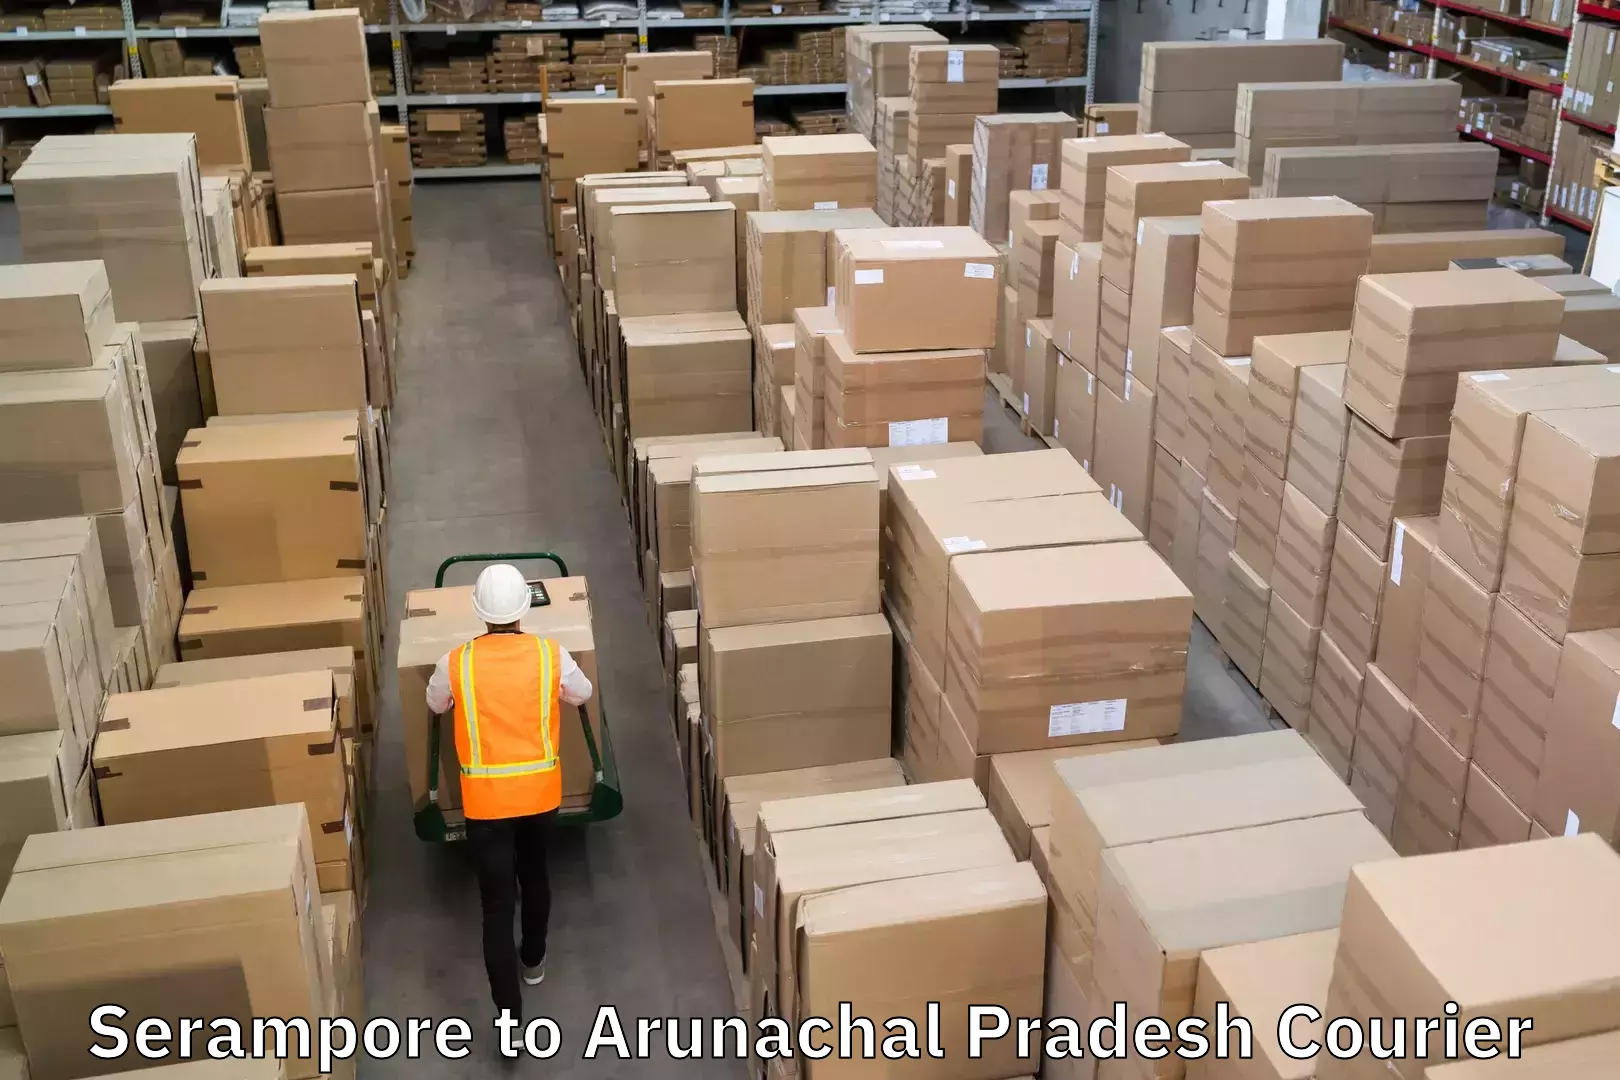 Comprehensive freight services Serampore to Arunachal Pradesh